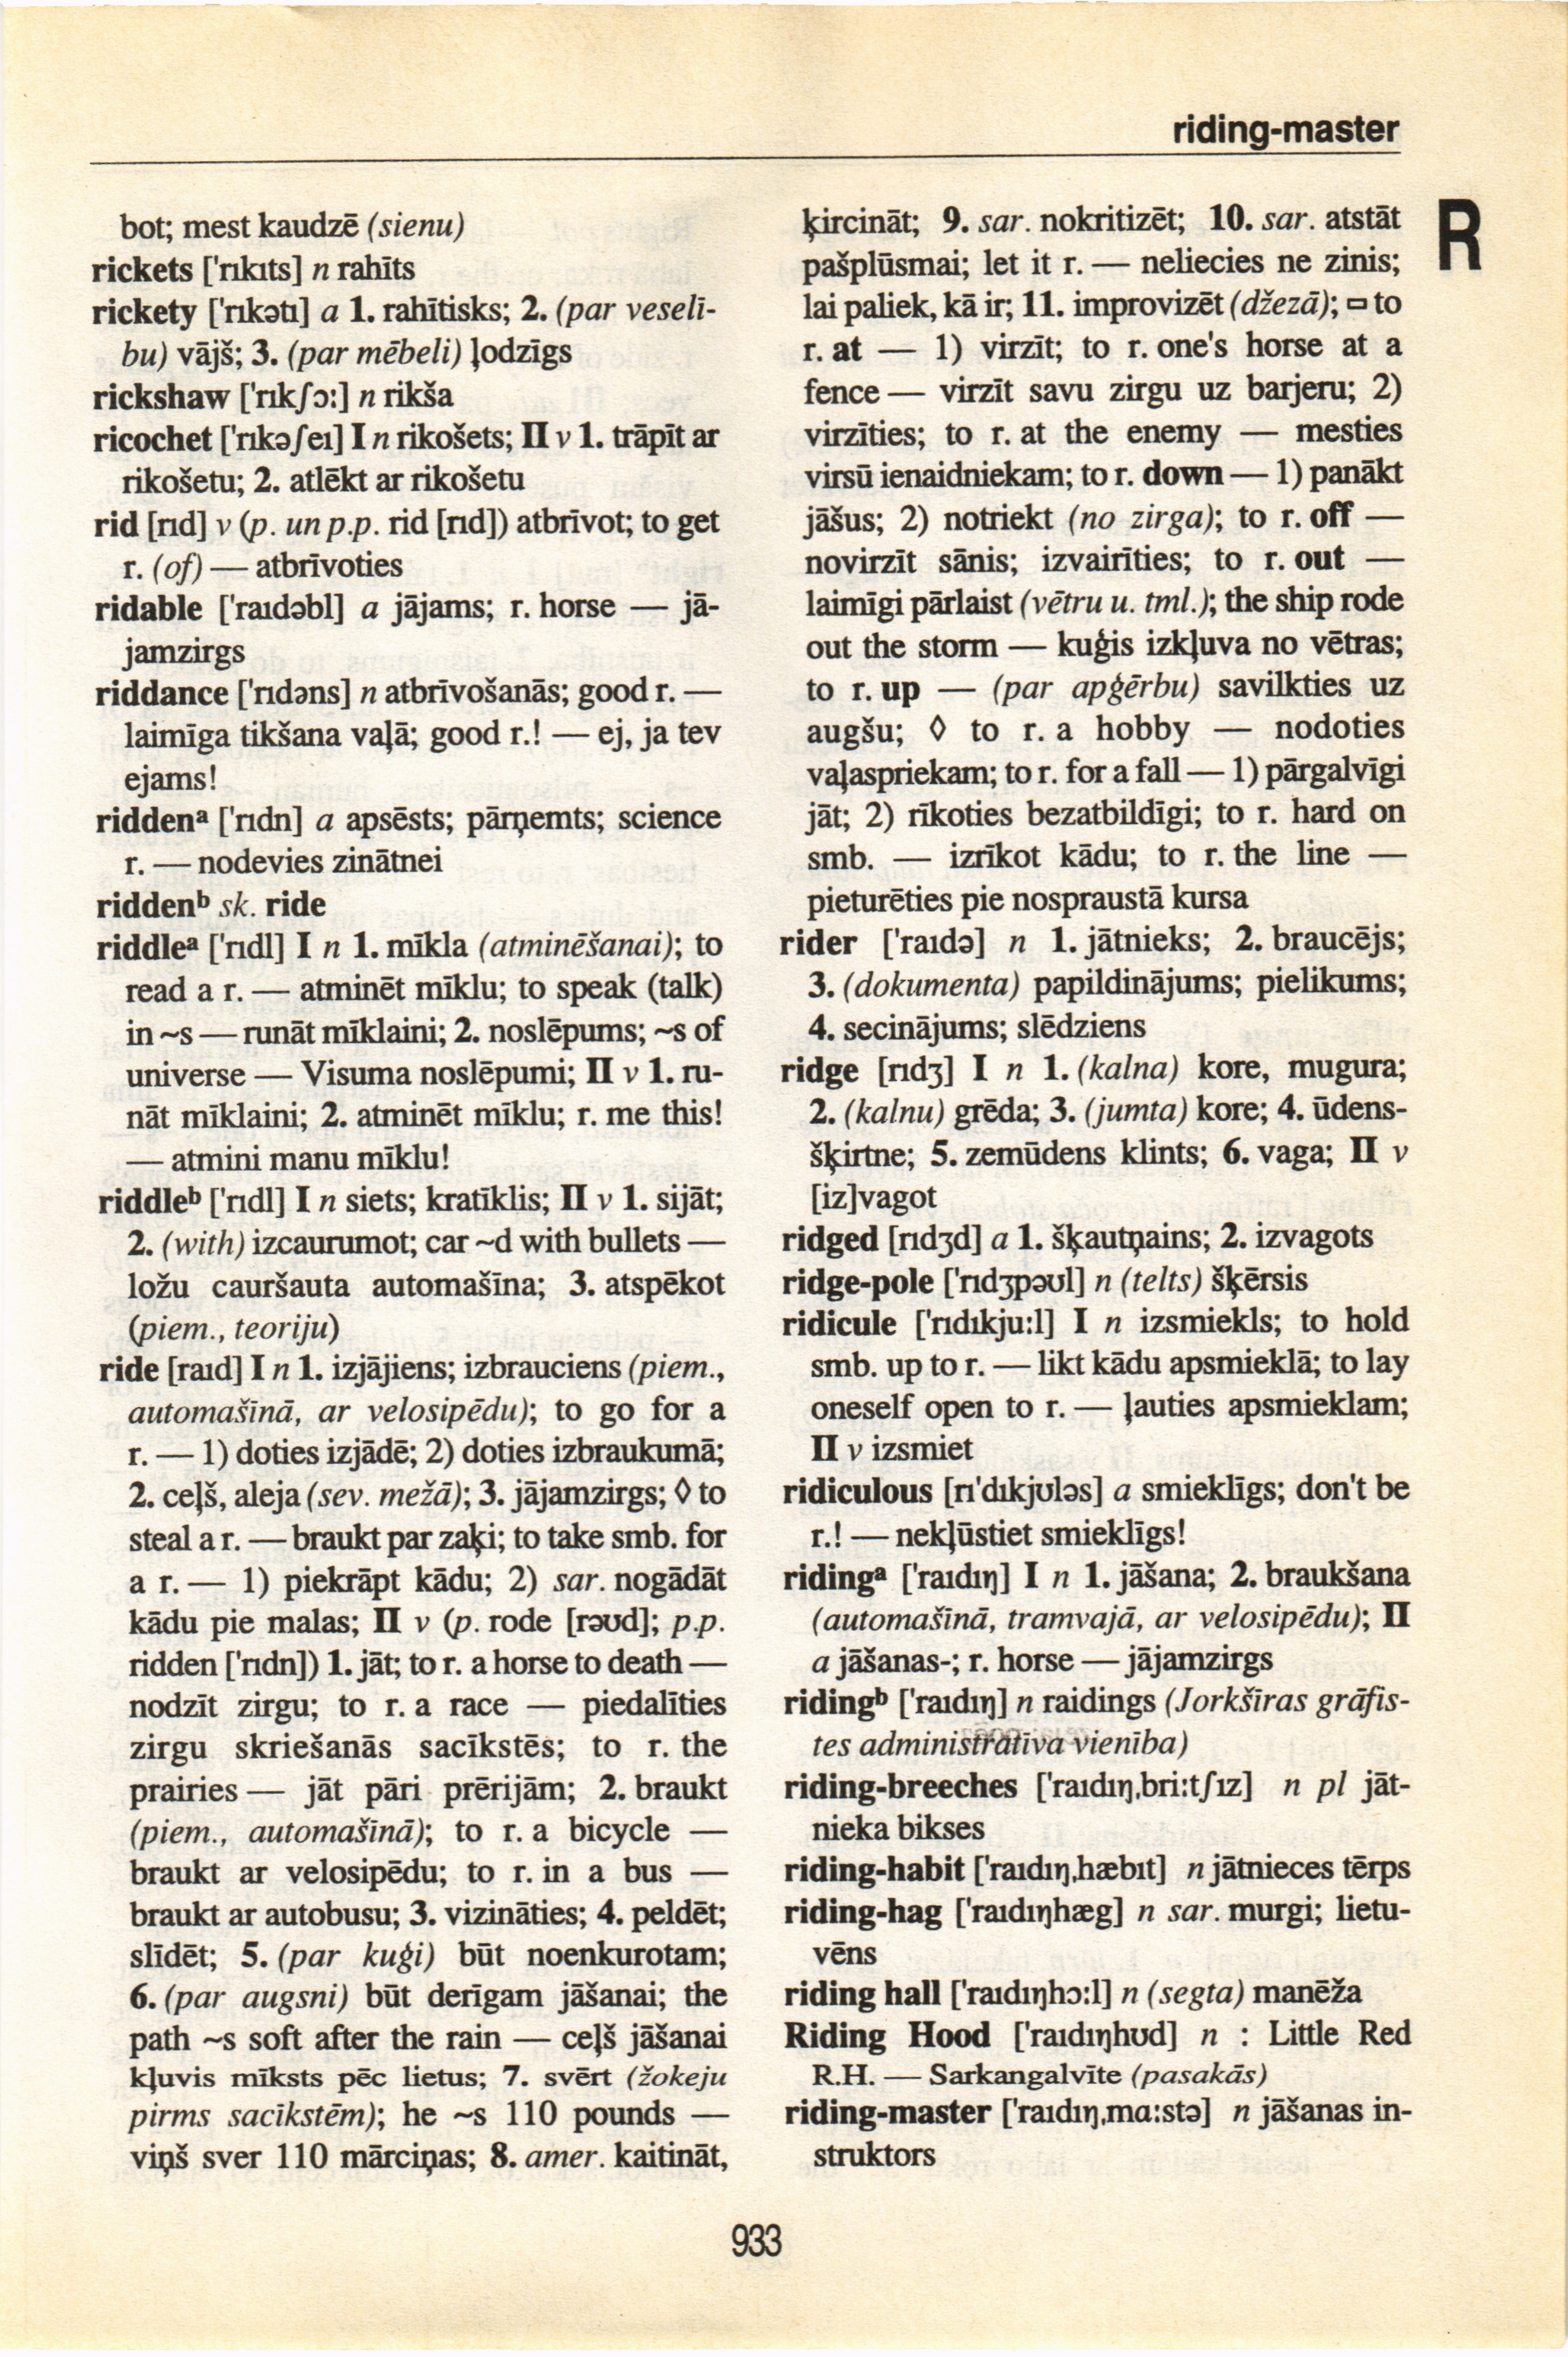 933 (English-Latvian dictionary : Anglu-latviesu vardnica)